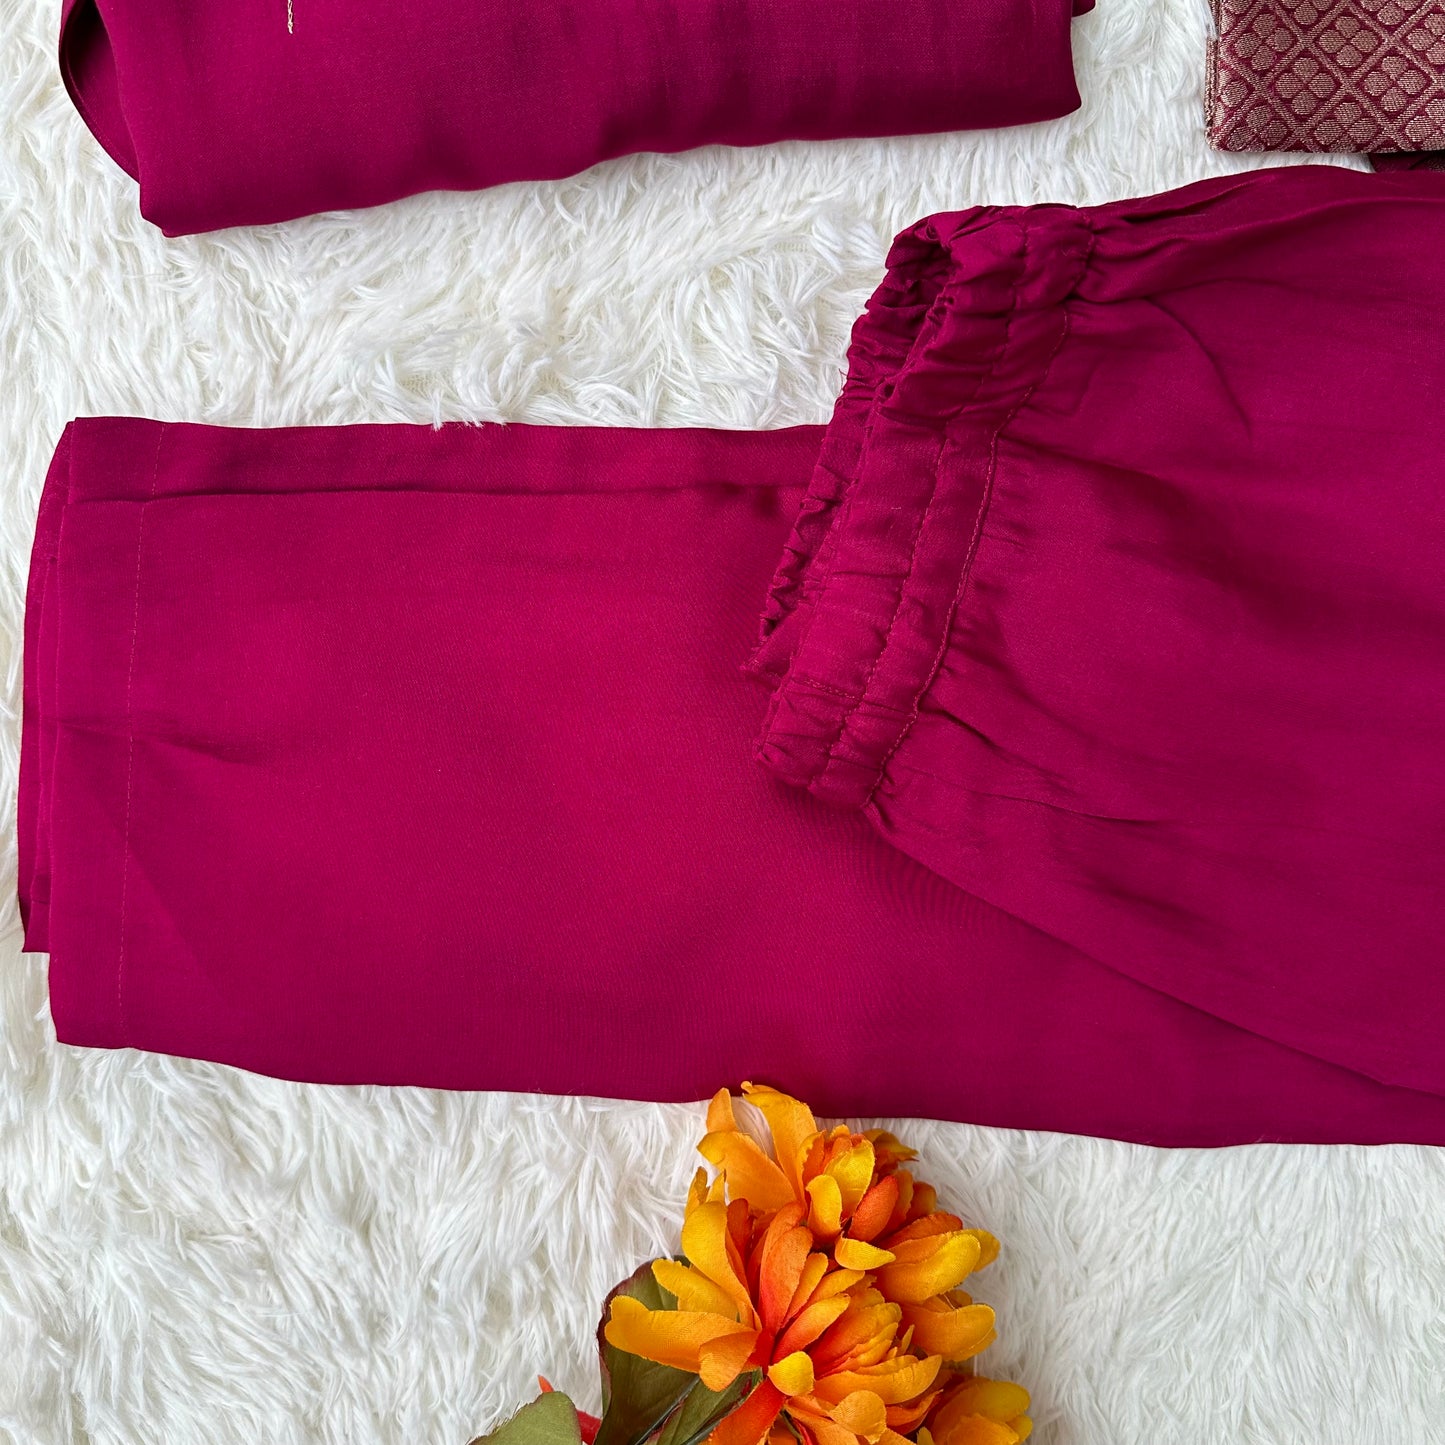 Beetroot pink Dola Silk kurta set, V-neck embroidery – Elegance redefined